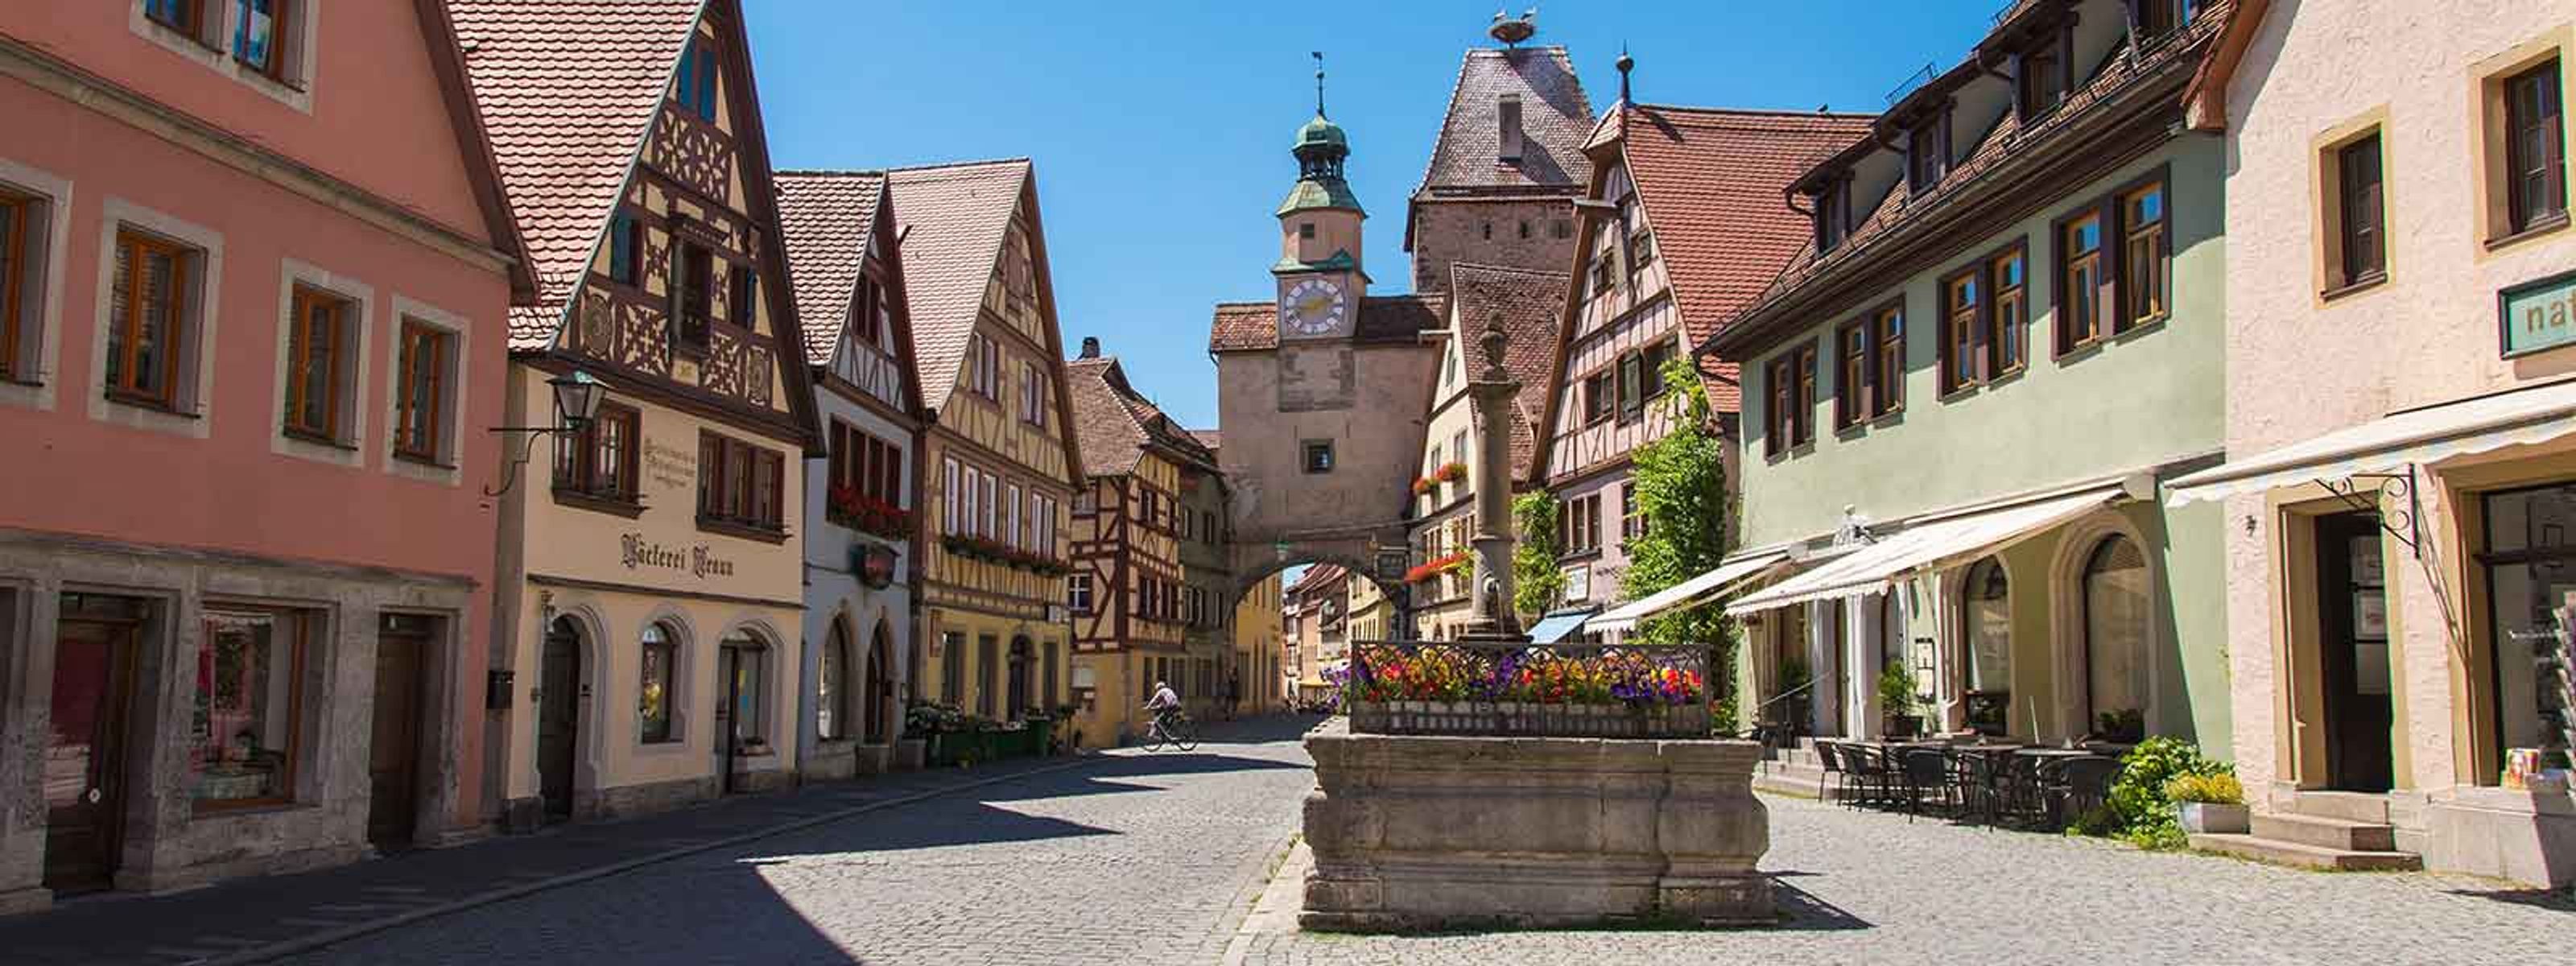 In der Altstadt von Rothenburg ob der Tauber am Plönlein